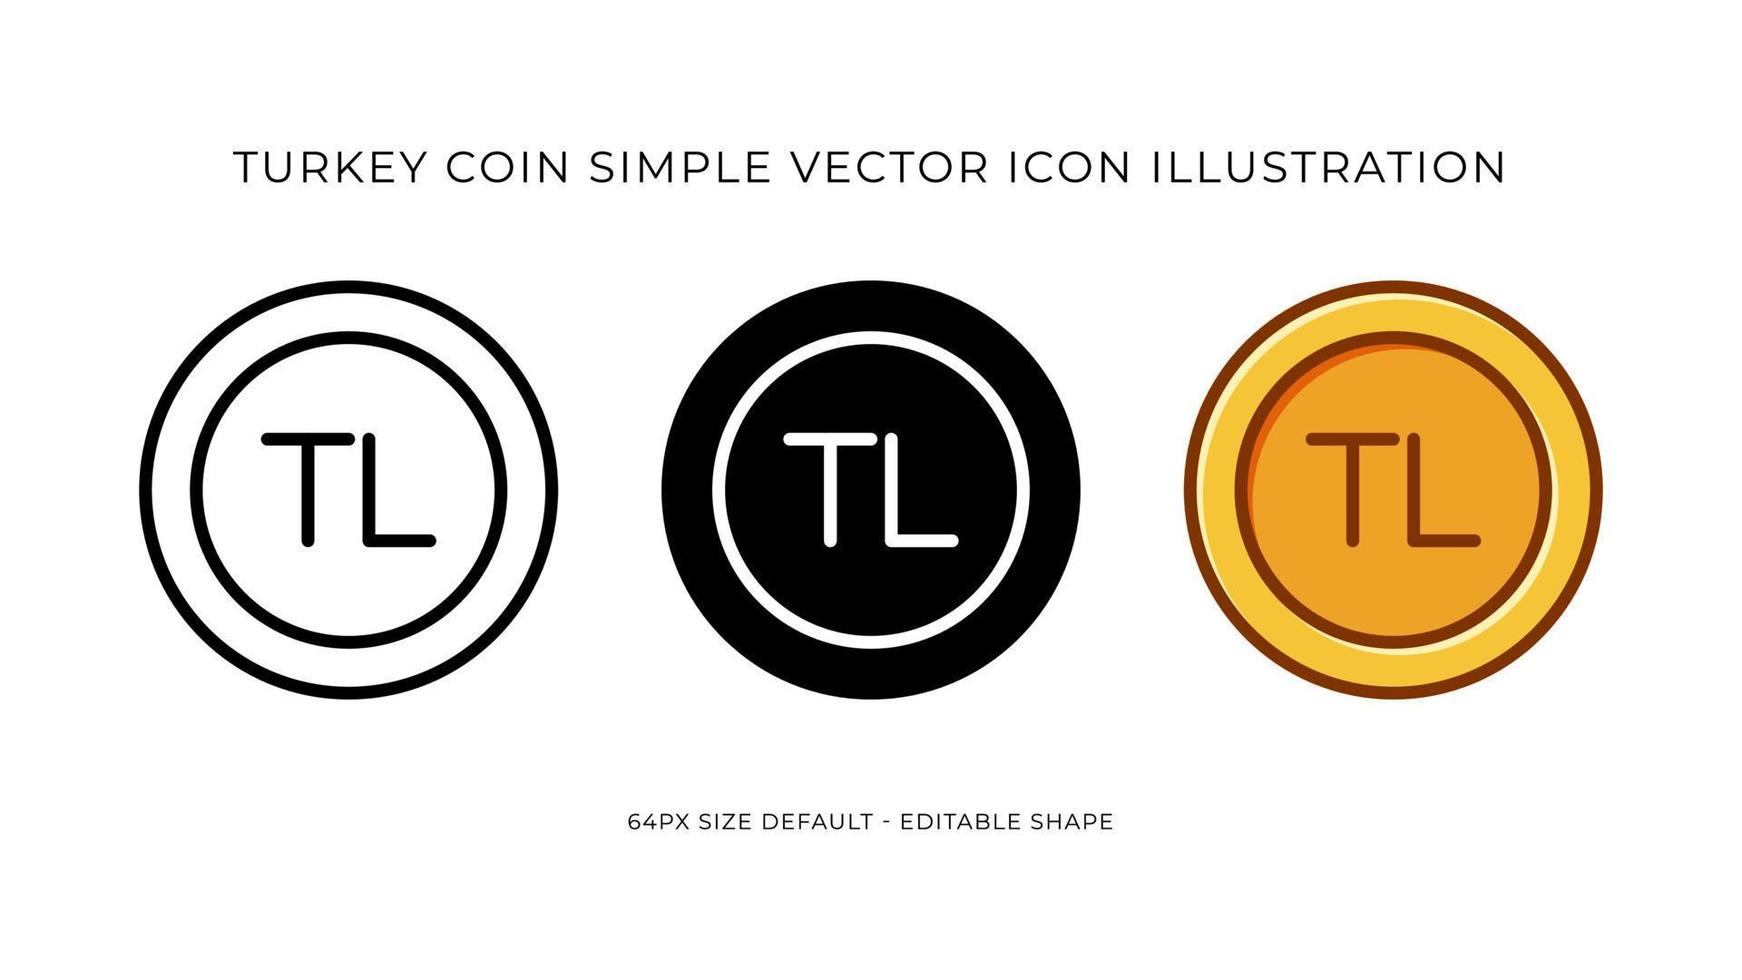 Turquía lira moneda sencillo vector icono ilustración